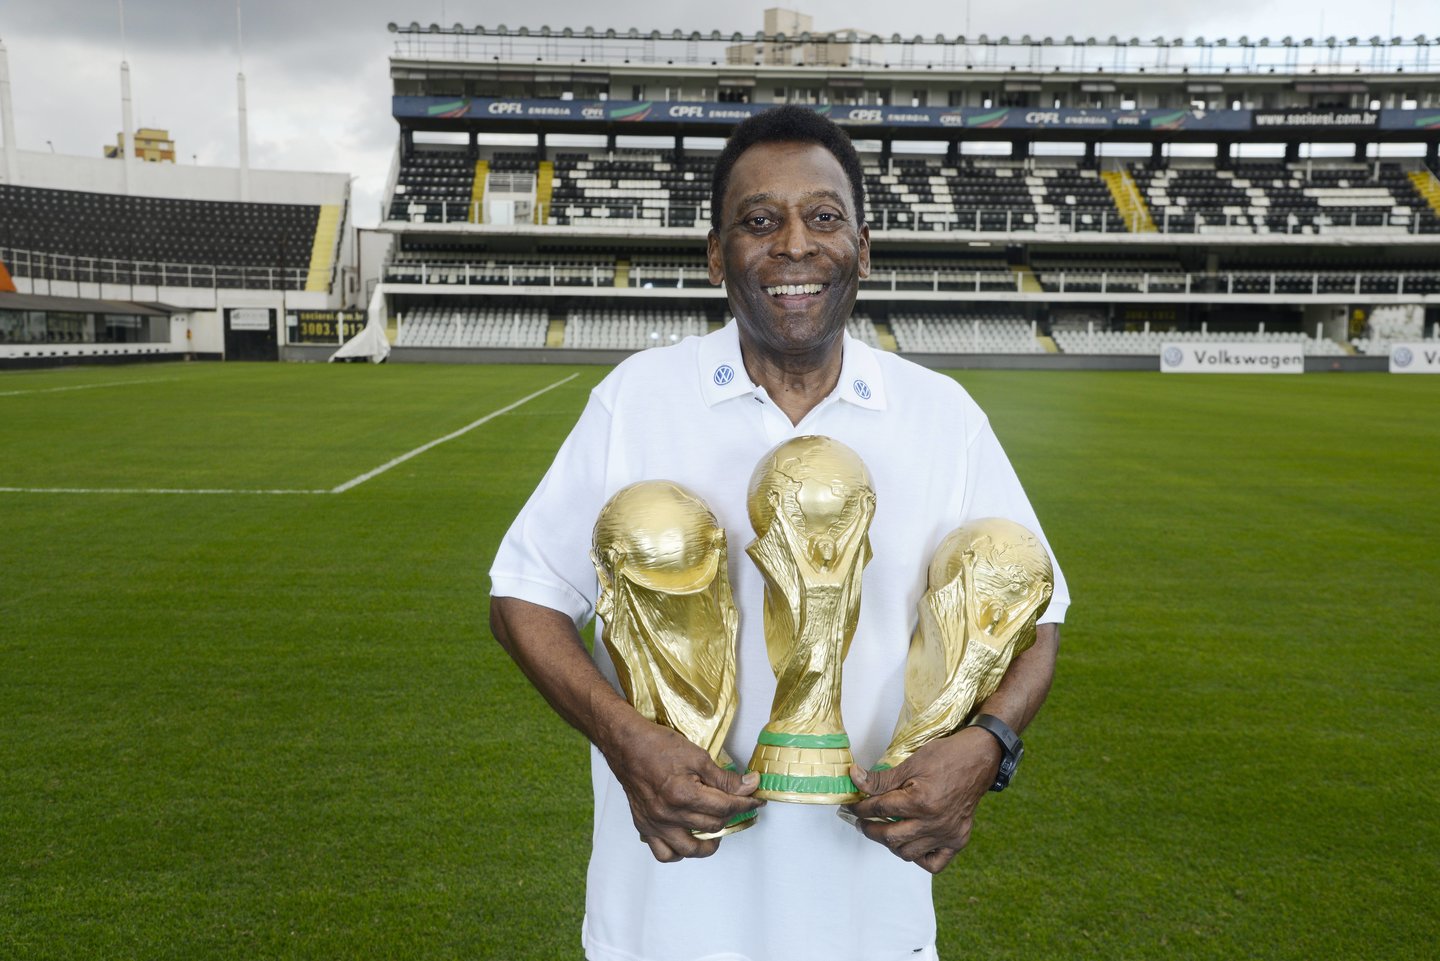 En images: Pelé, la carrière d'un roi - Le Temps